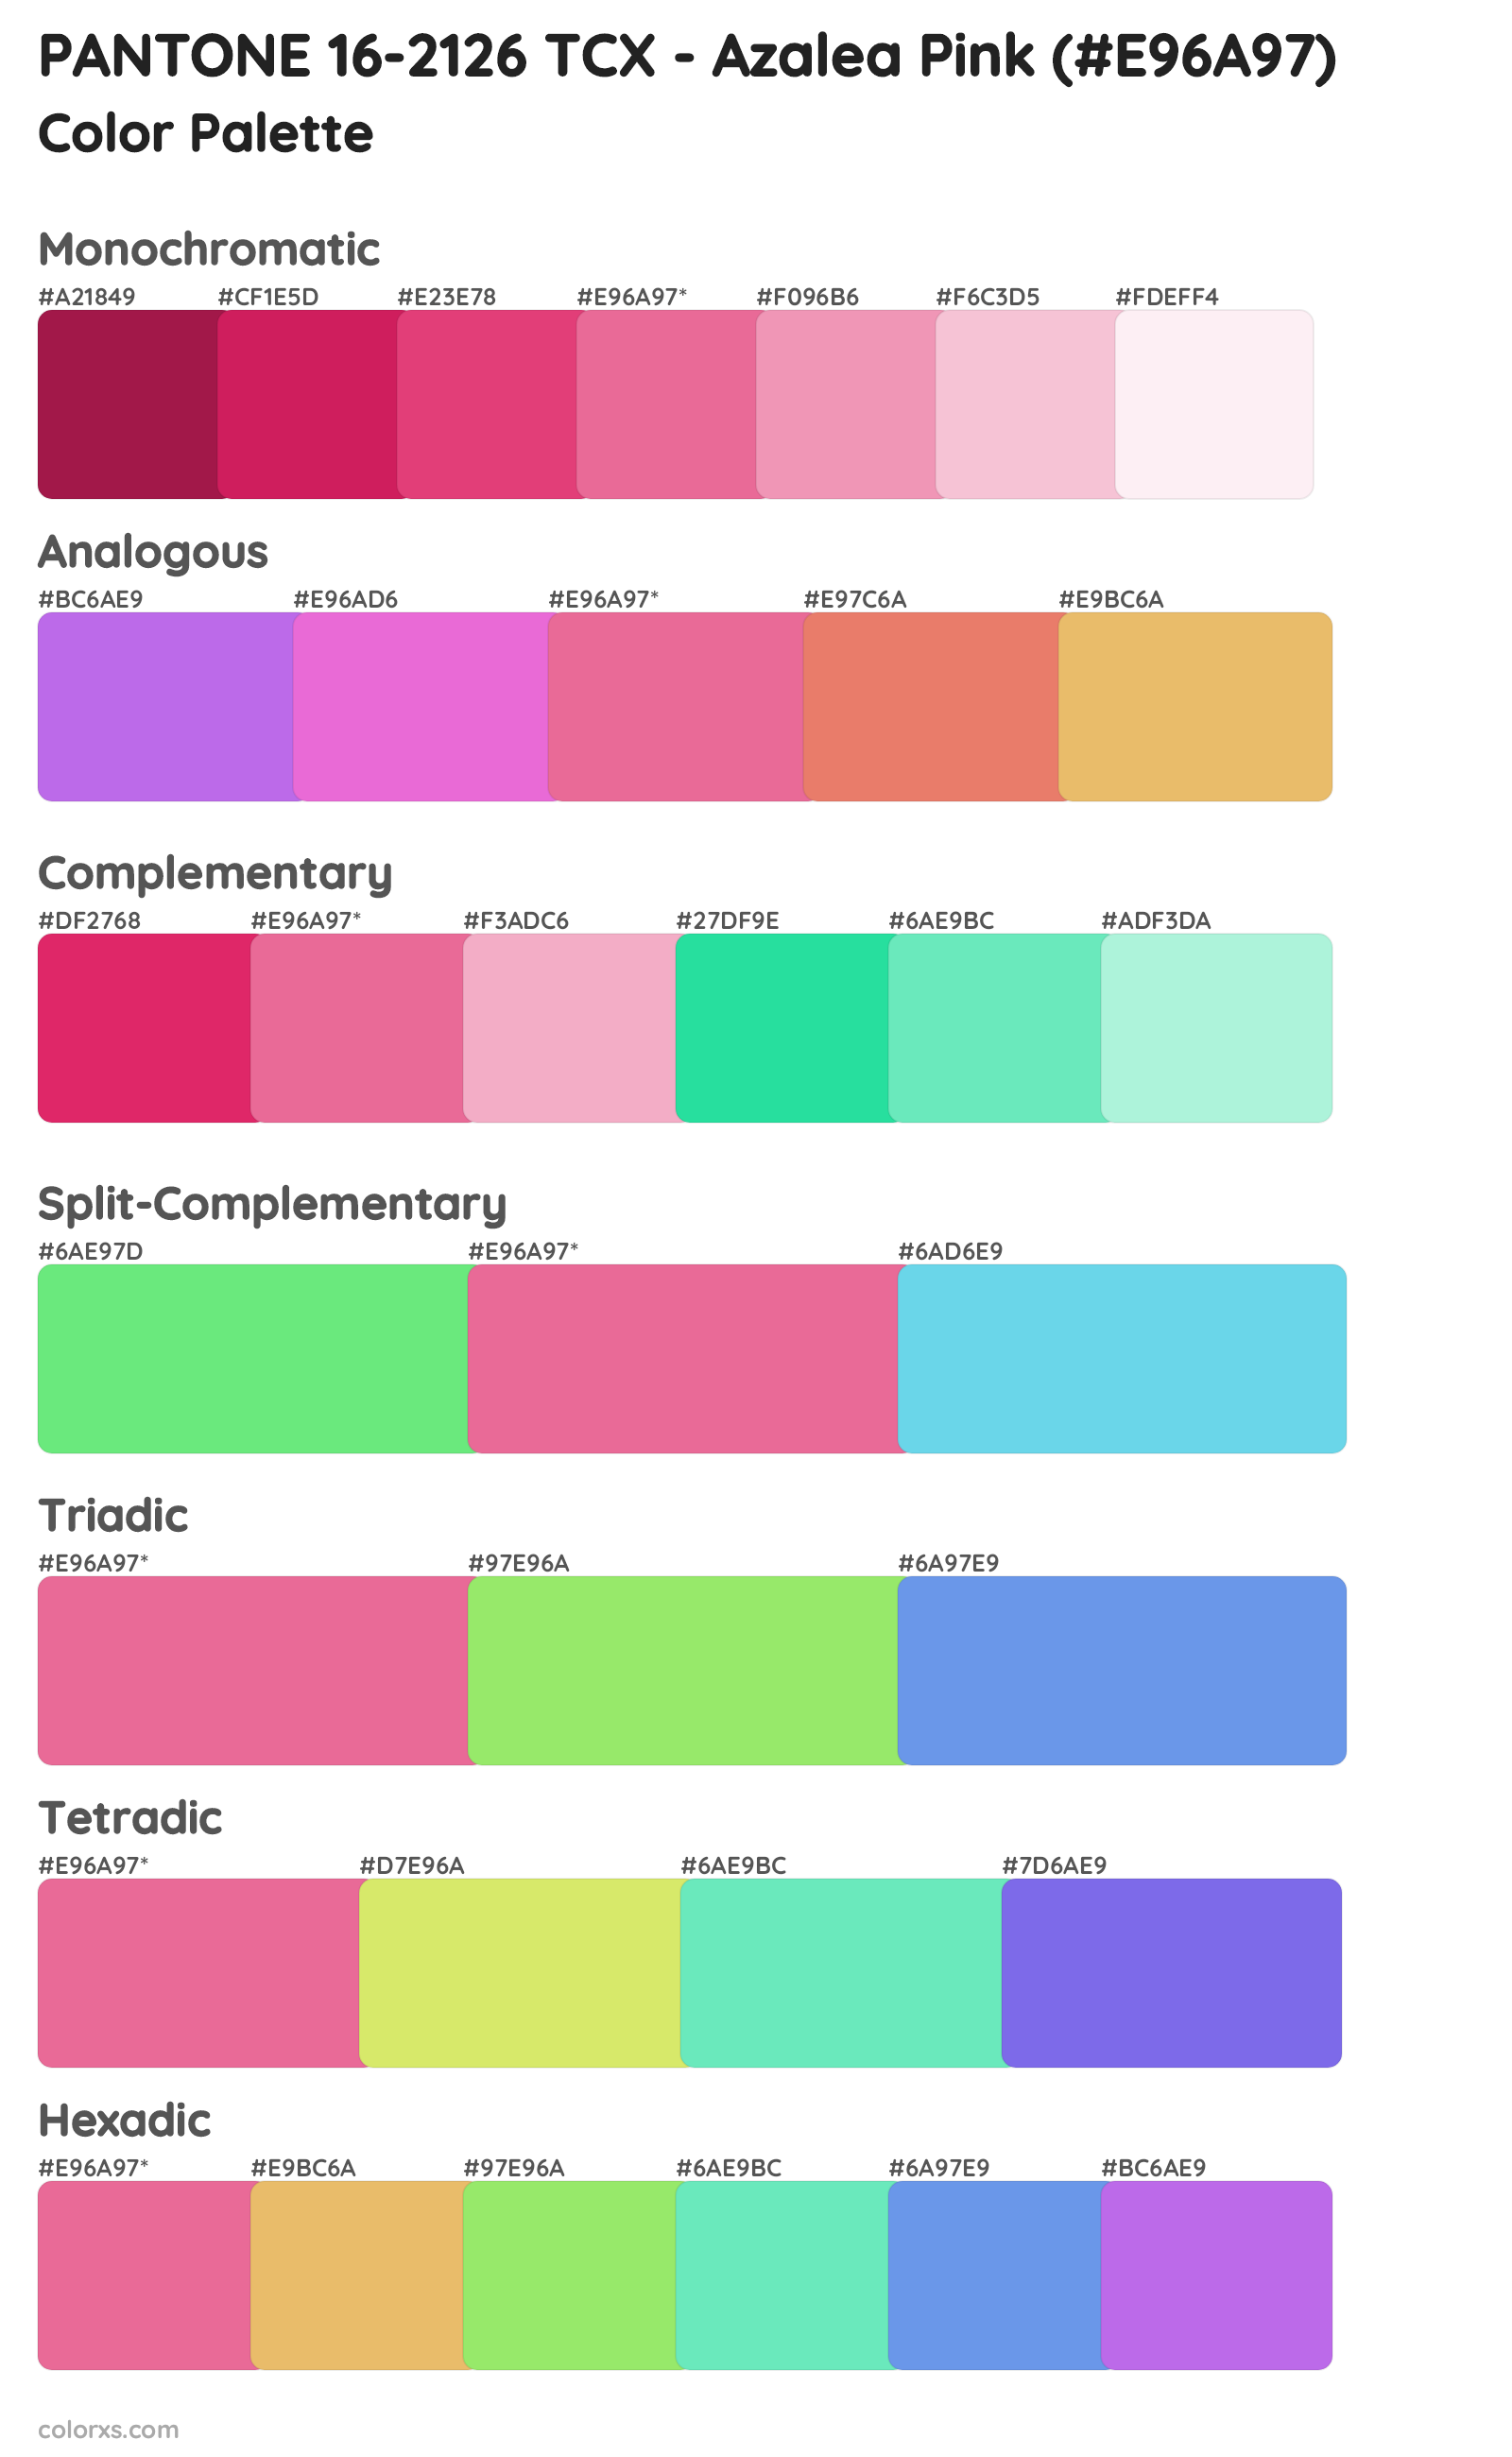 PANTONE 16-2126 TCX - Azalea Pink Color Scheme Palettes